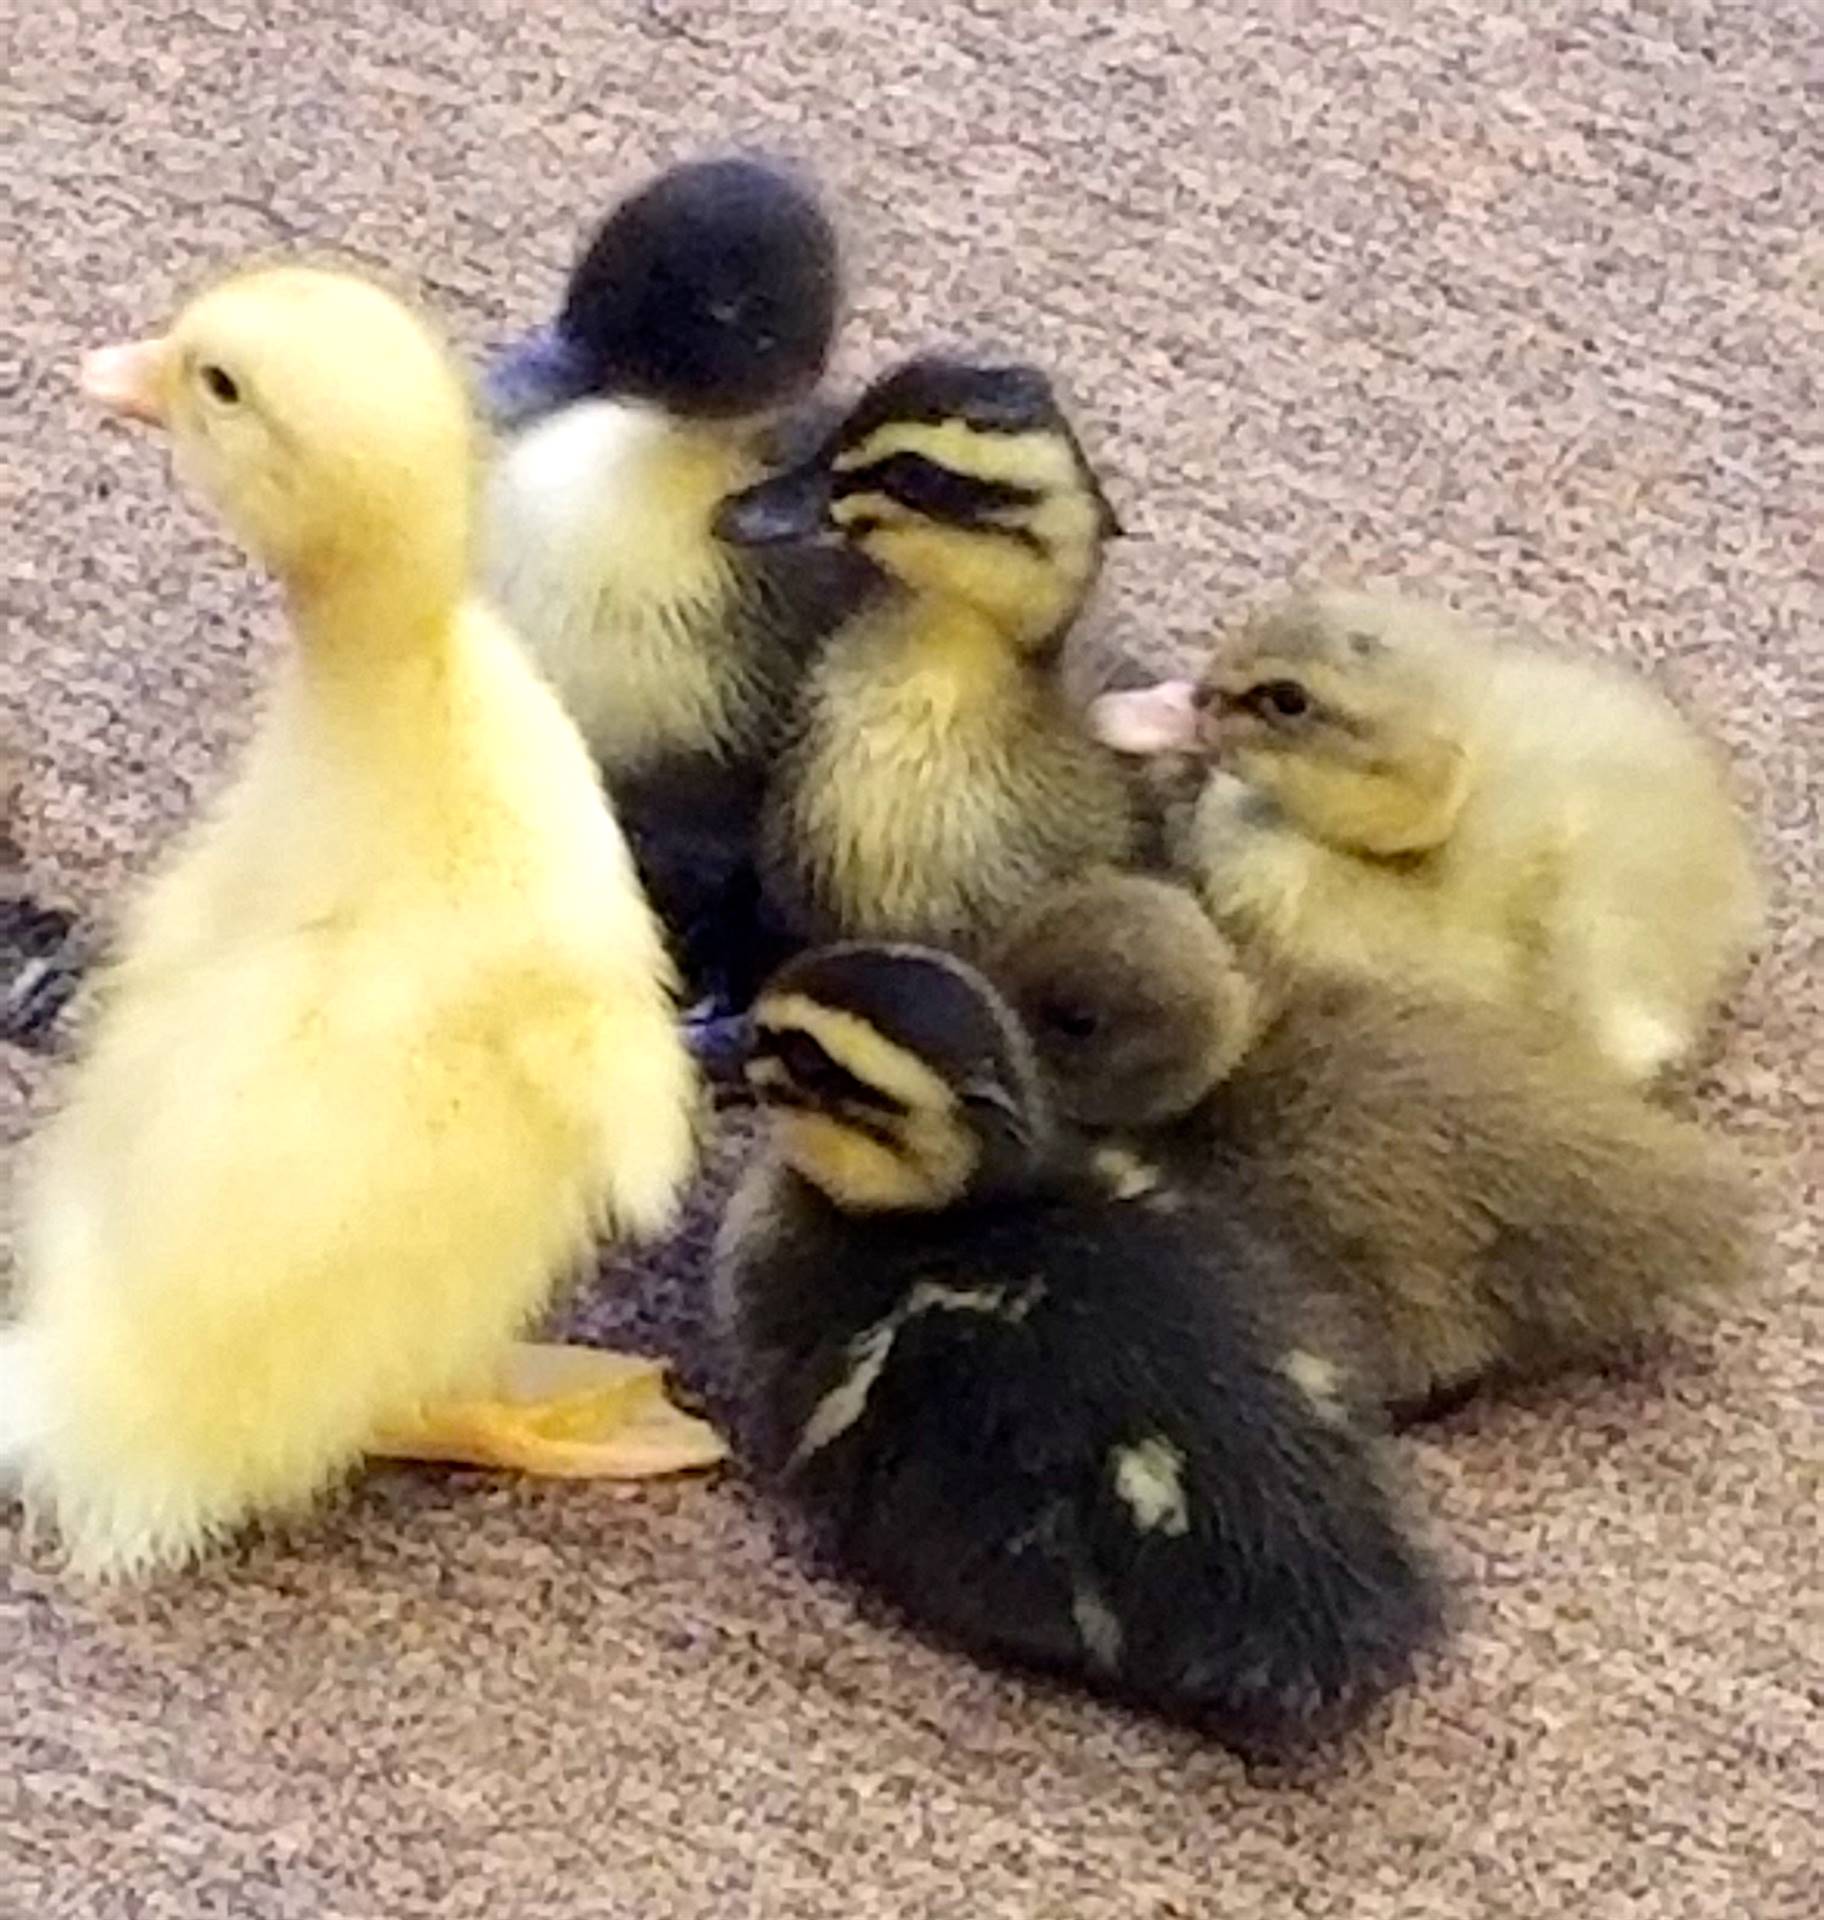 6 little ducklings all huddled.